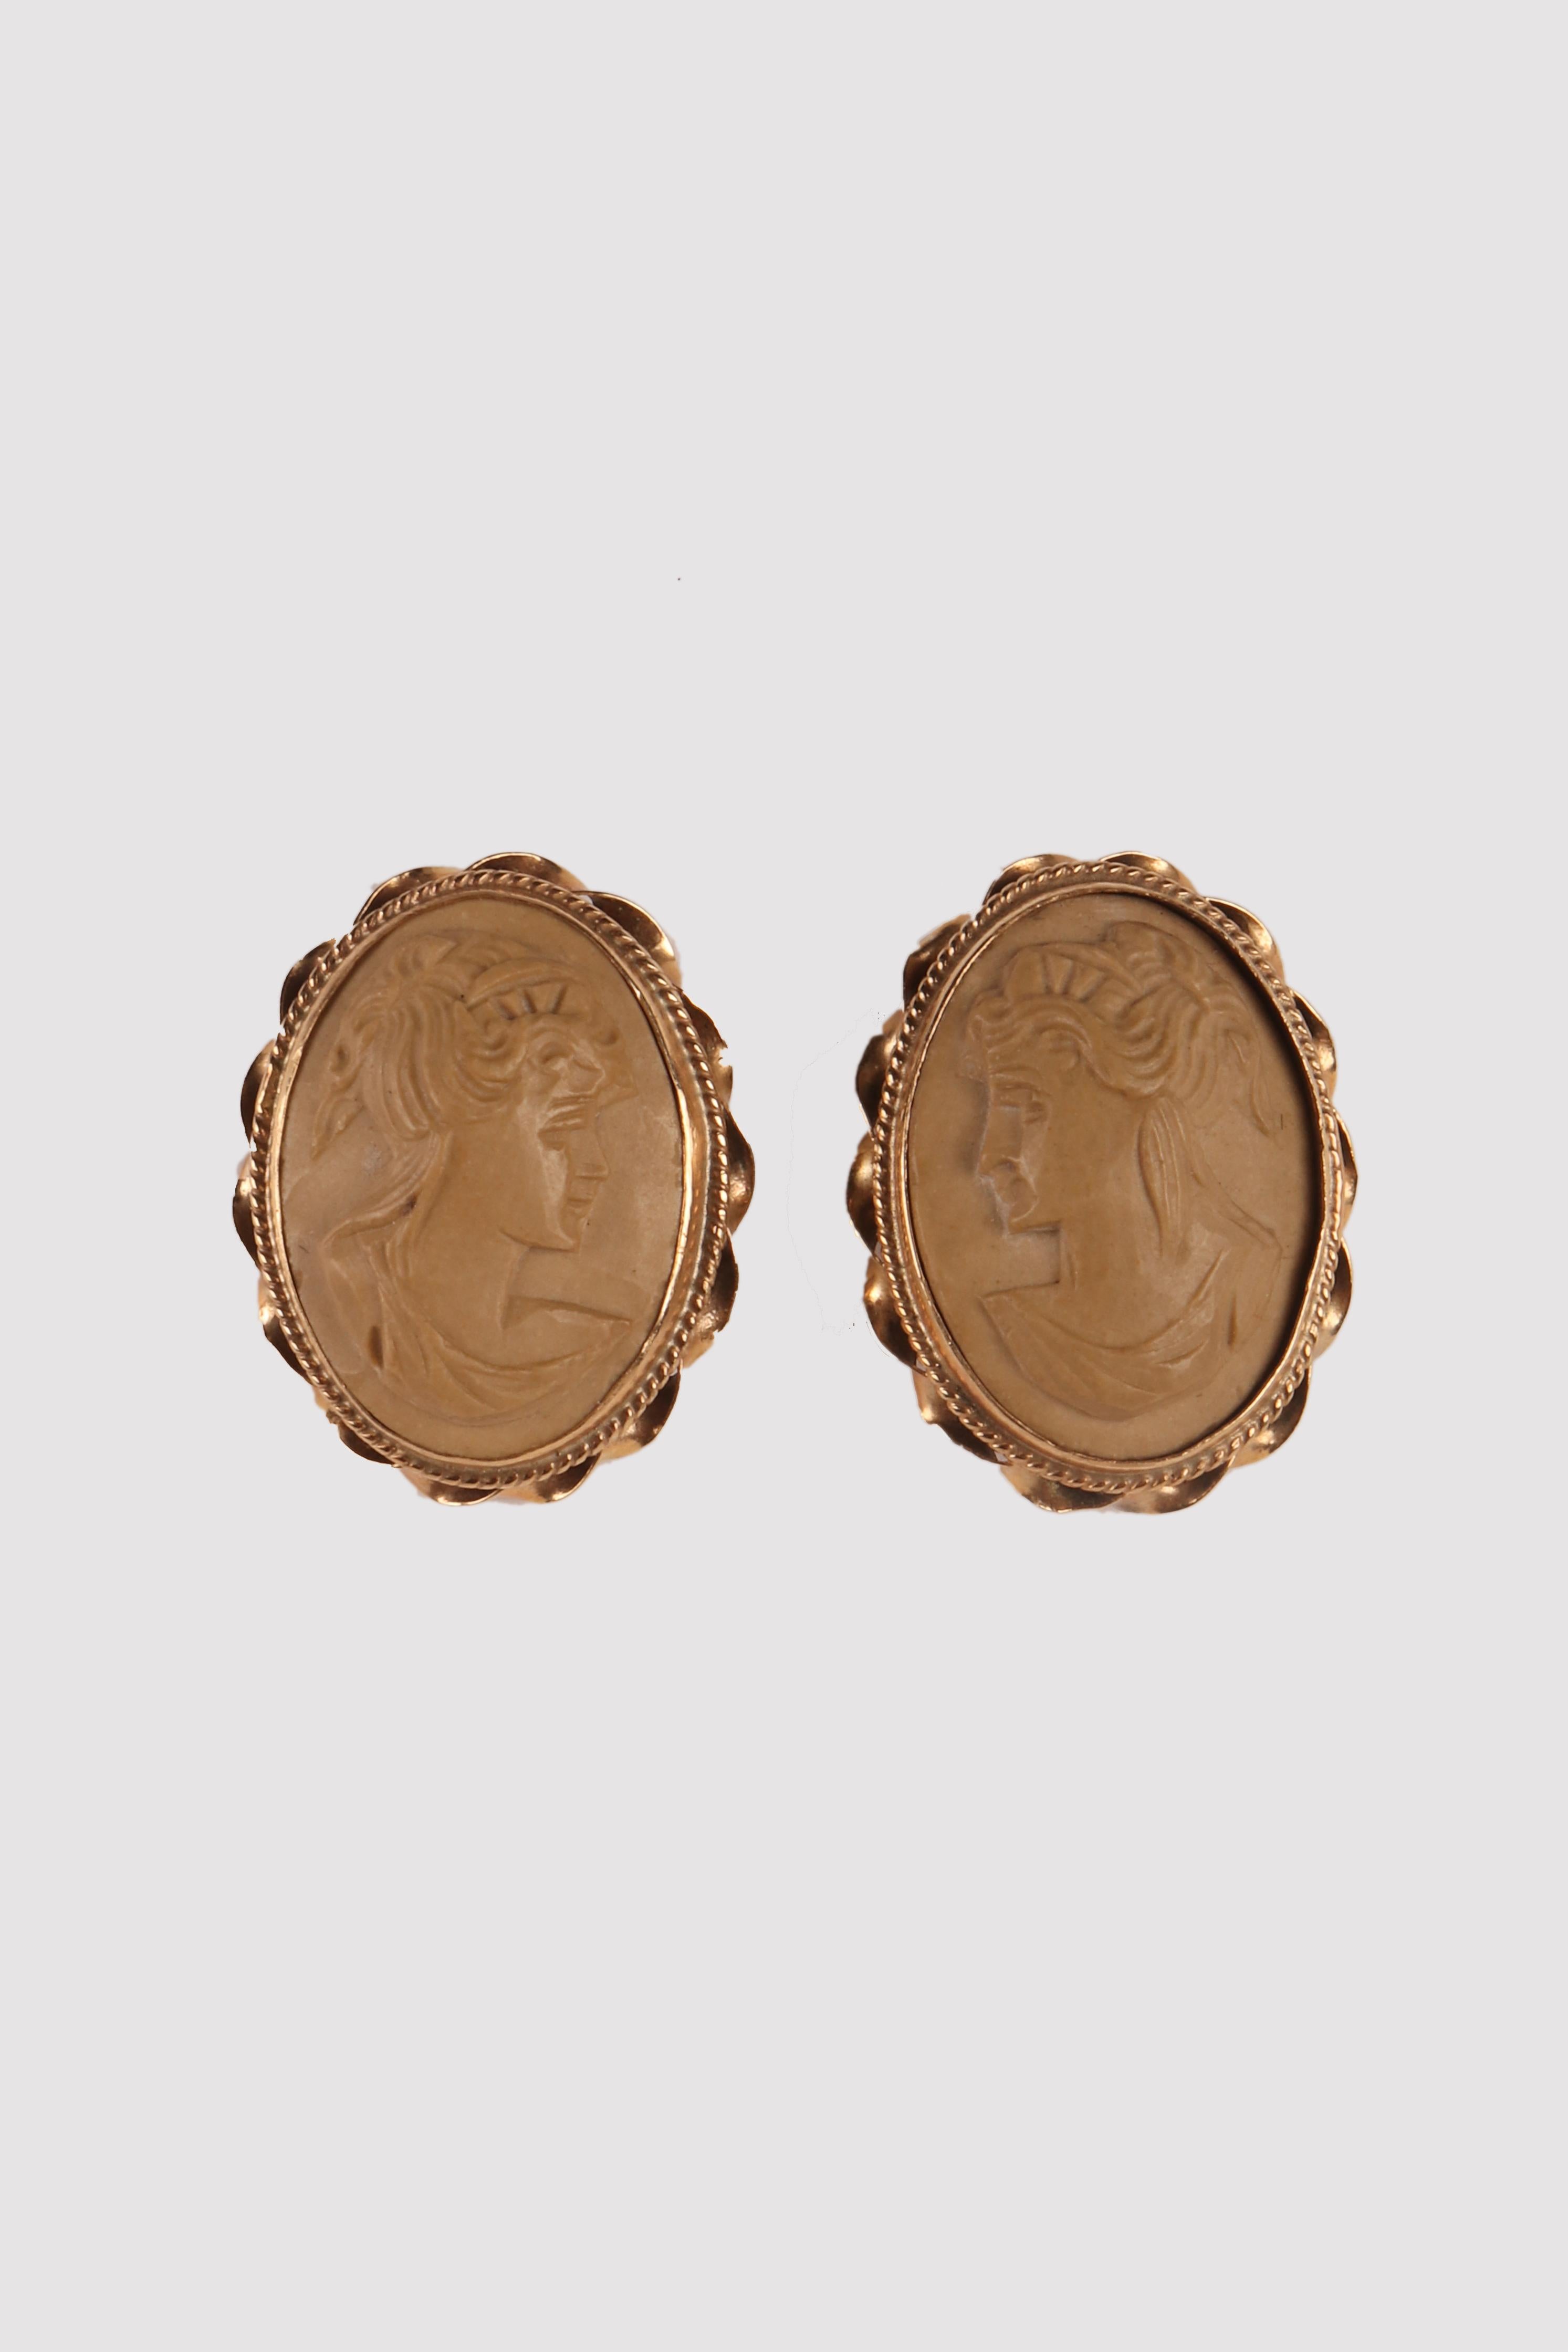 Boucles d'oreilles en or et lave. Les camées ovales, sculptés dans la lave claire, représentent deux bustes de profil de jeunes femmes aux coiffures classiques sur un fond lisse.
La monture en or 14 carats présente une lunette verticale lisse,